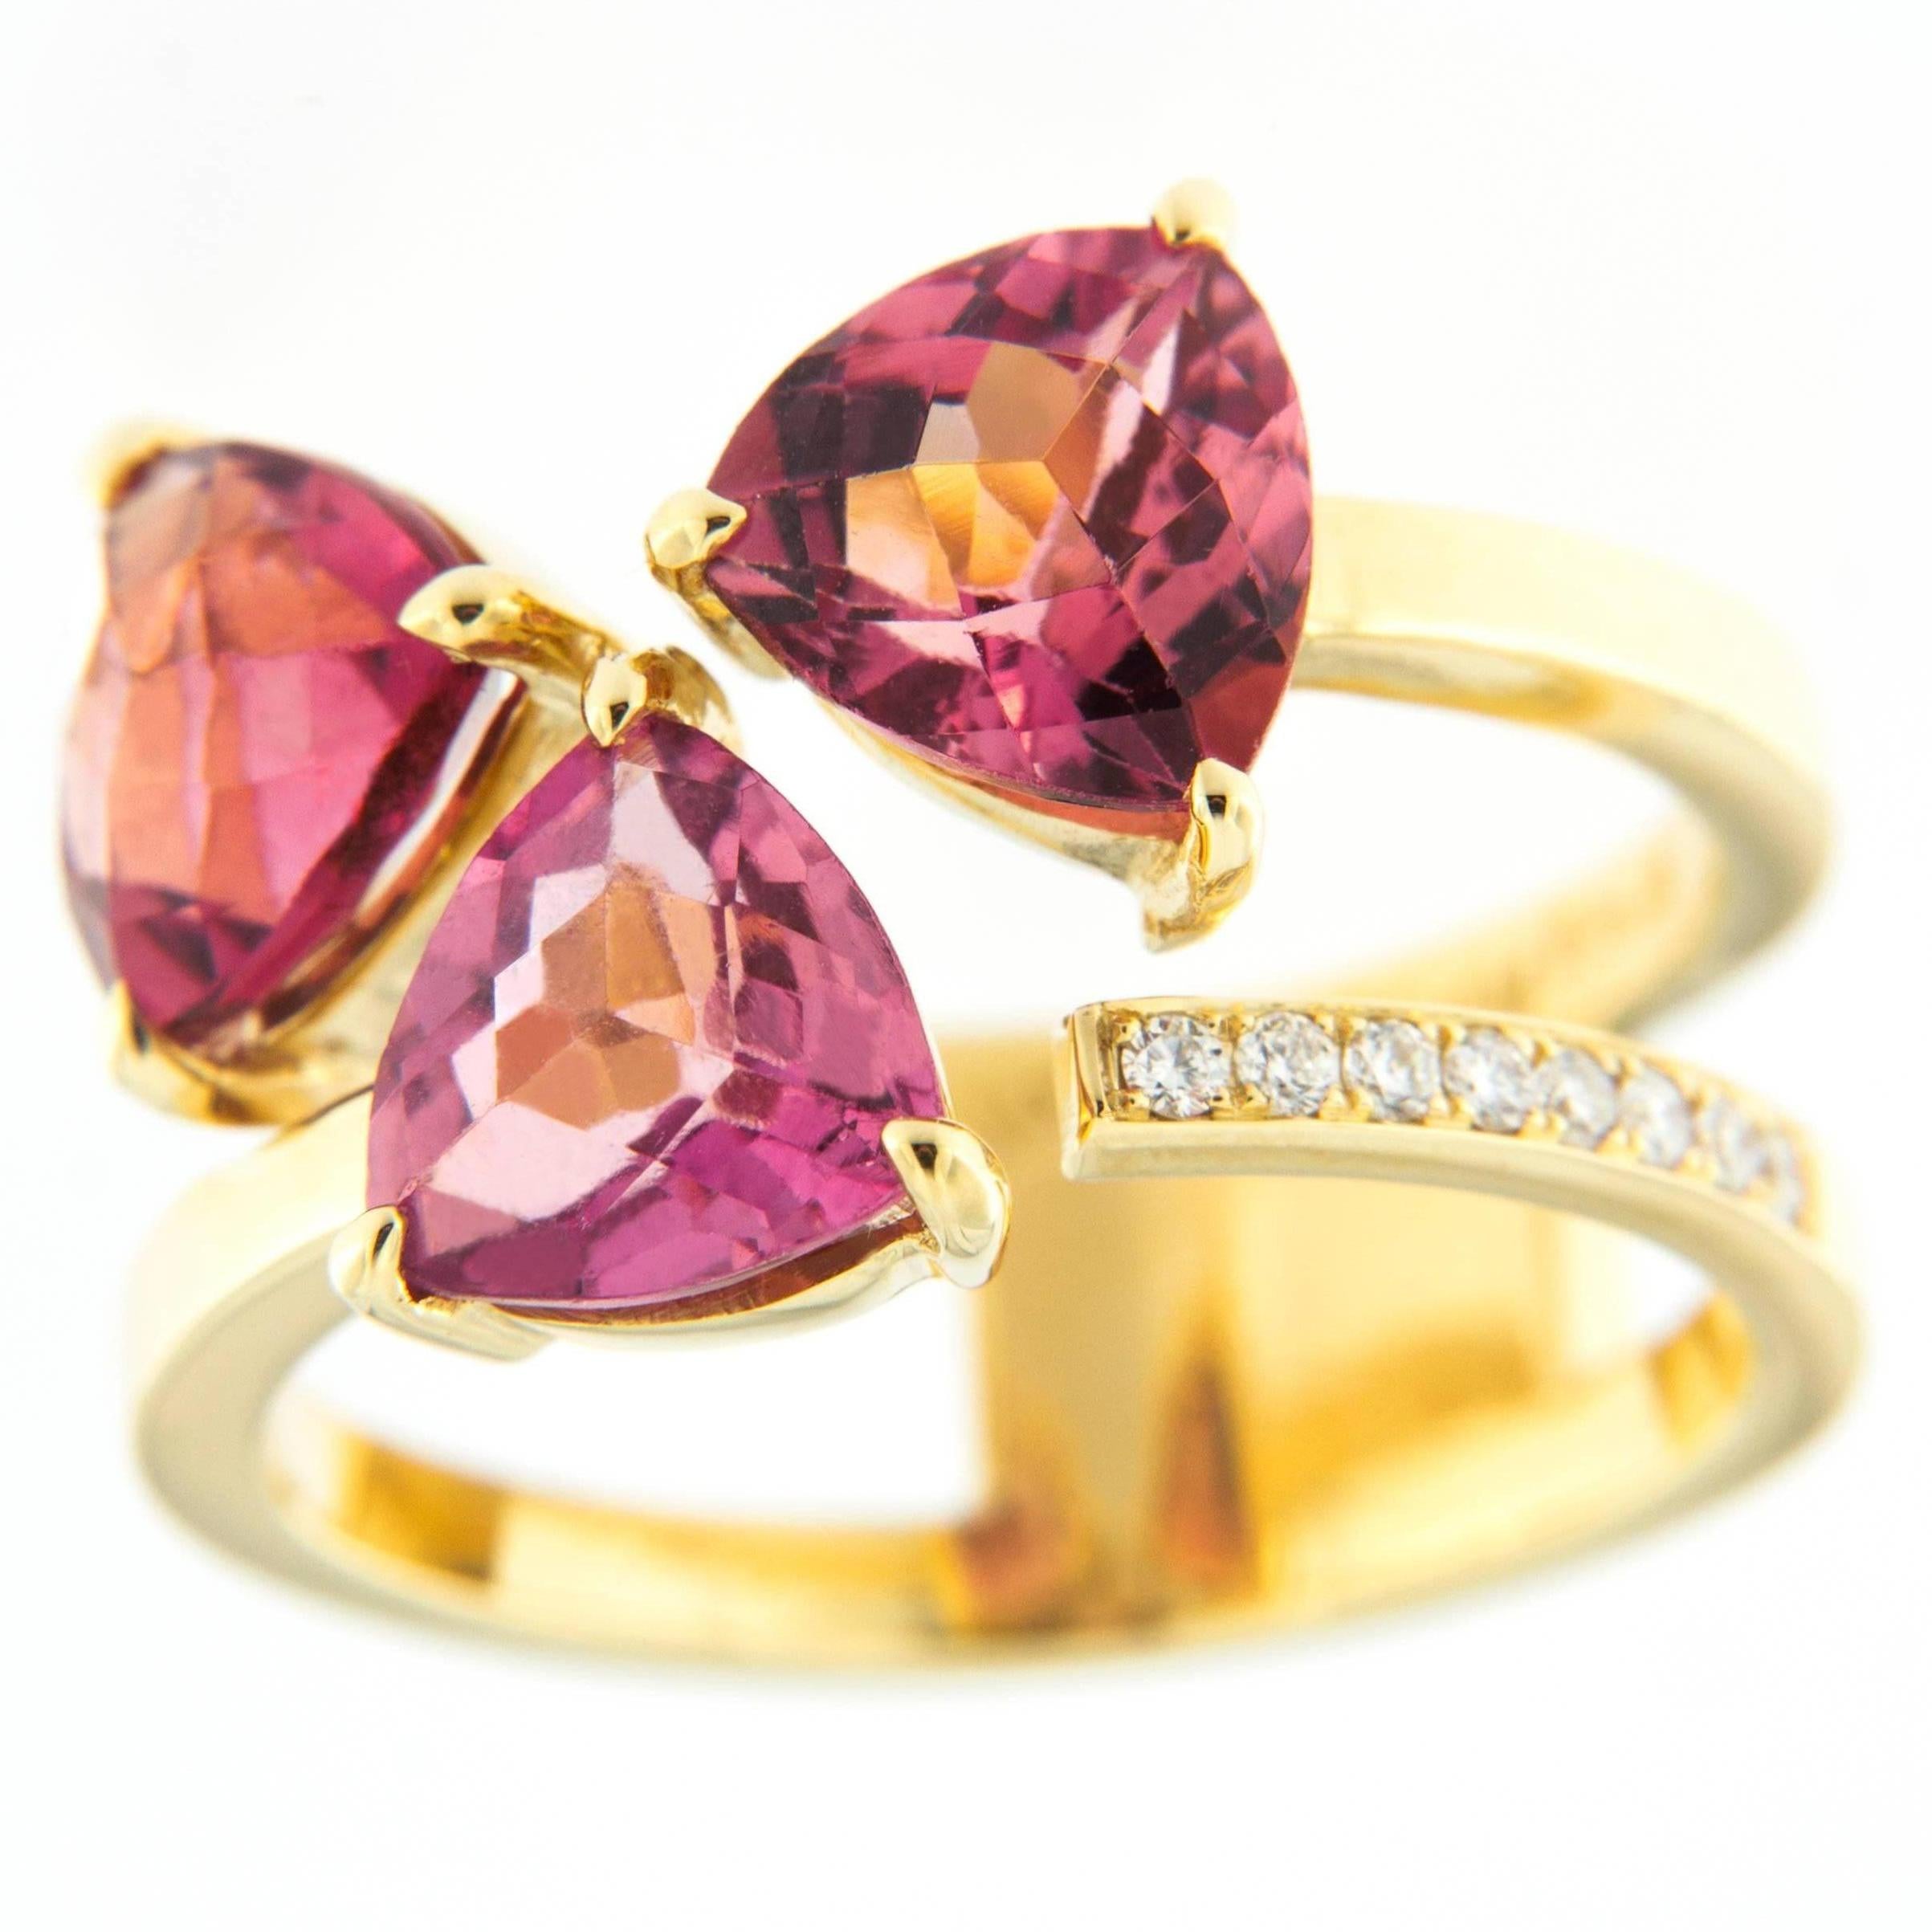 Trillion Cut Jona Pink Tourmaline White Diamond 18 Karat Yellow Gold Ring